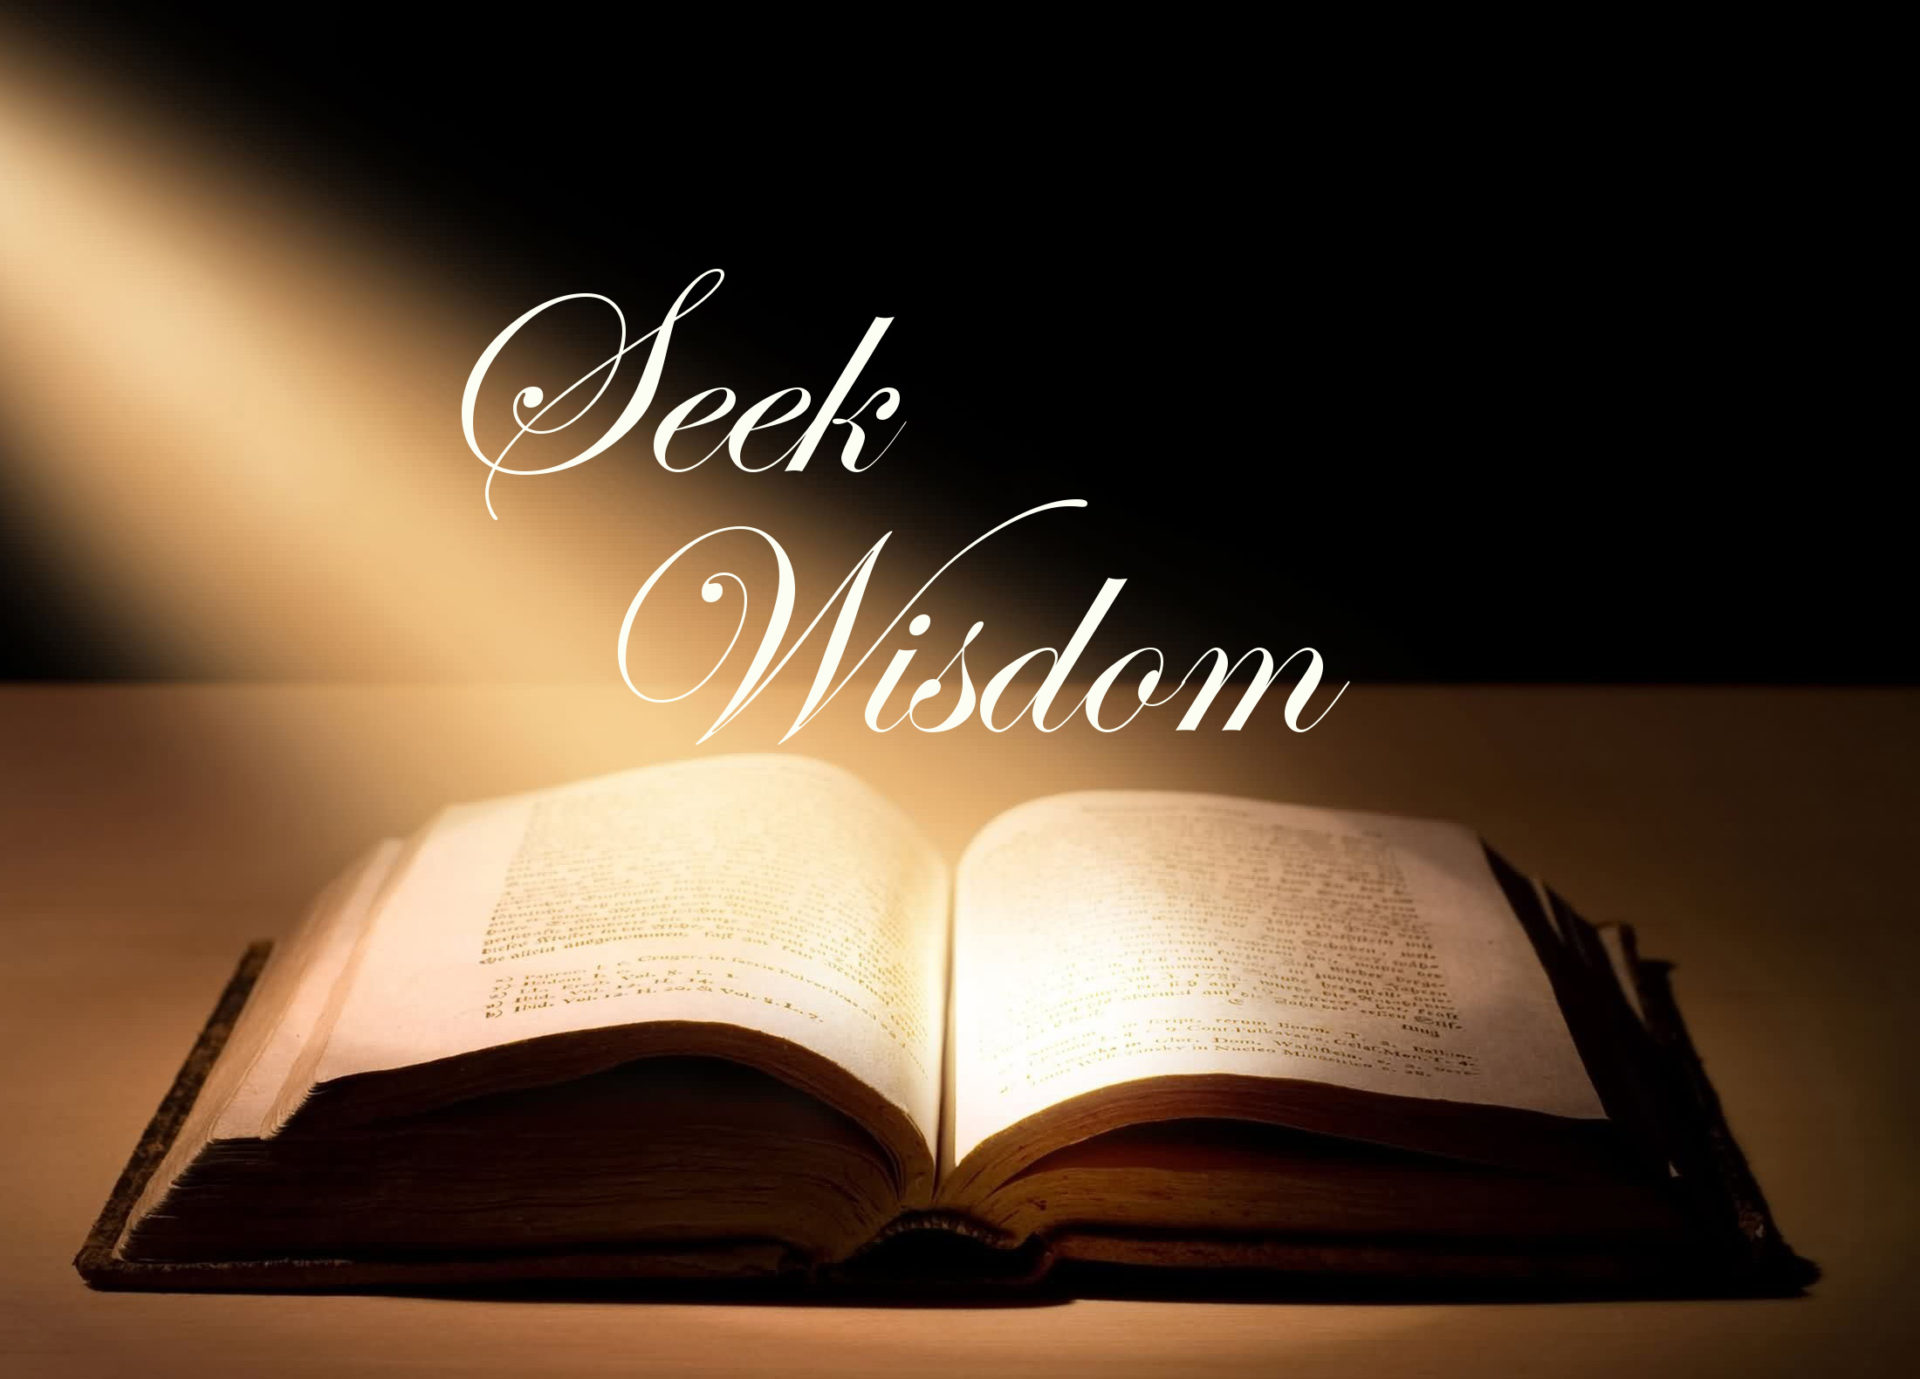 How to Get More Wisdom